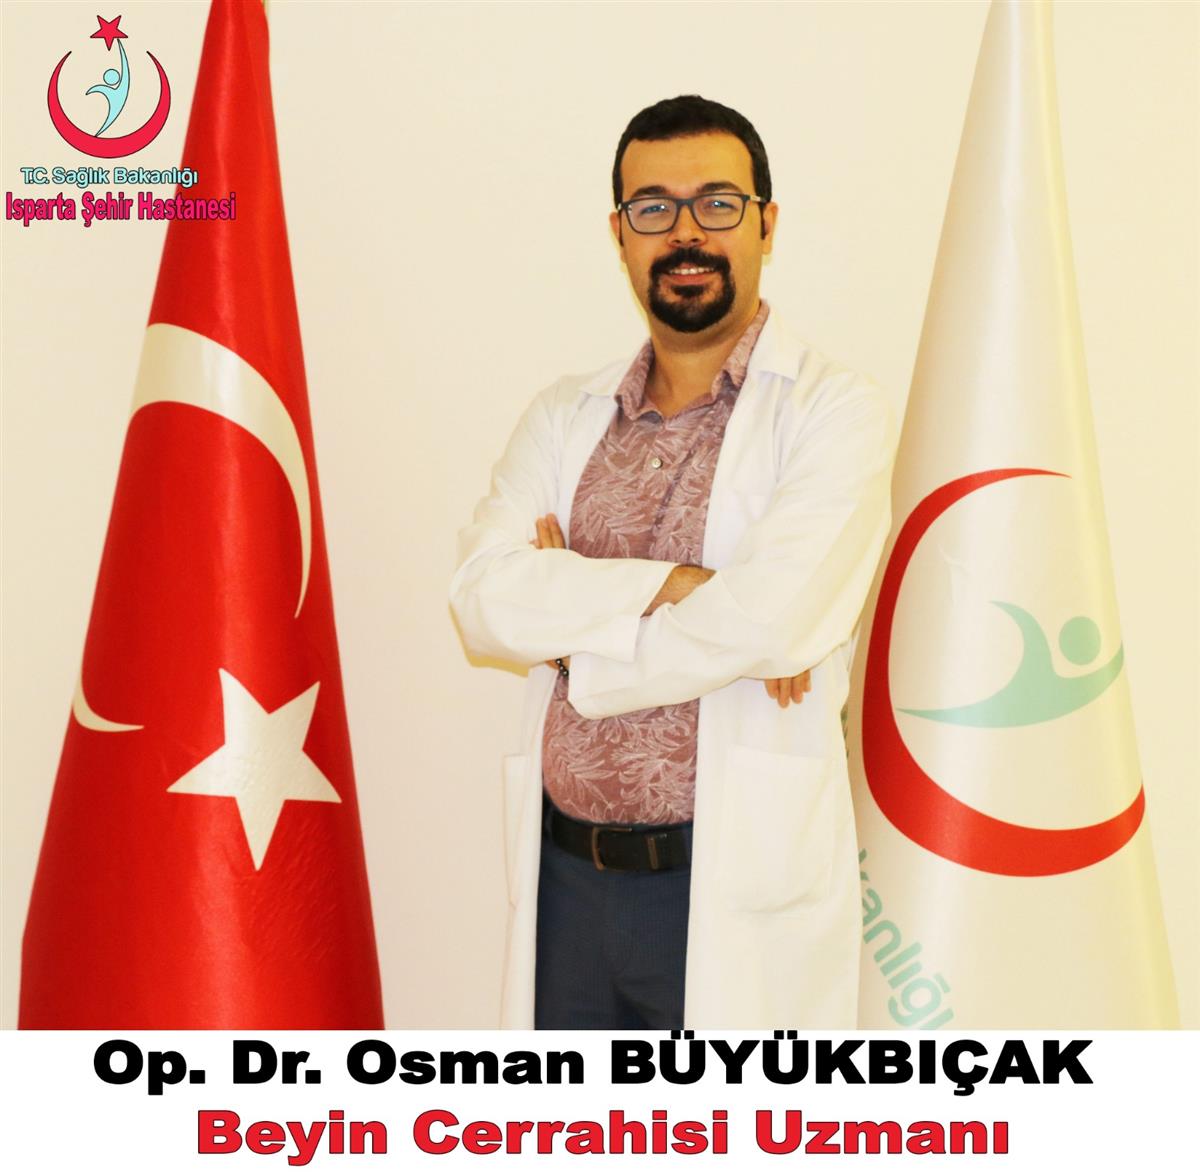 Op. Dr. Osman BÜYÜKBIÇAK.jpg